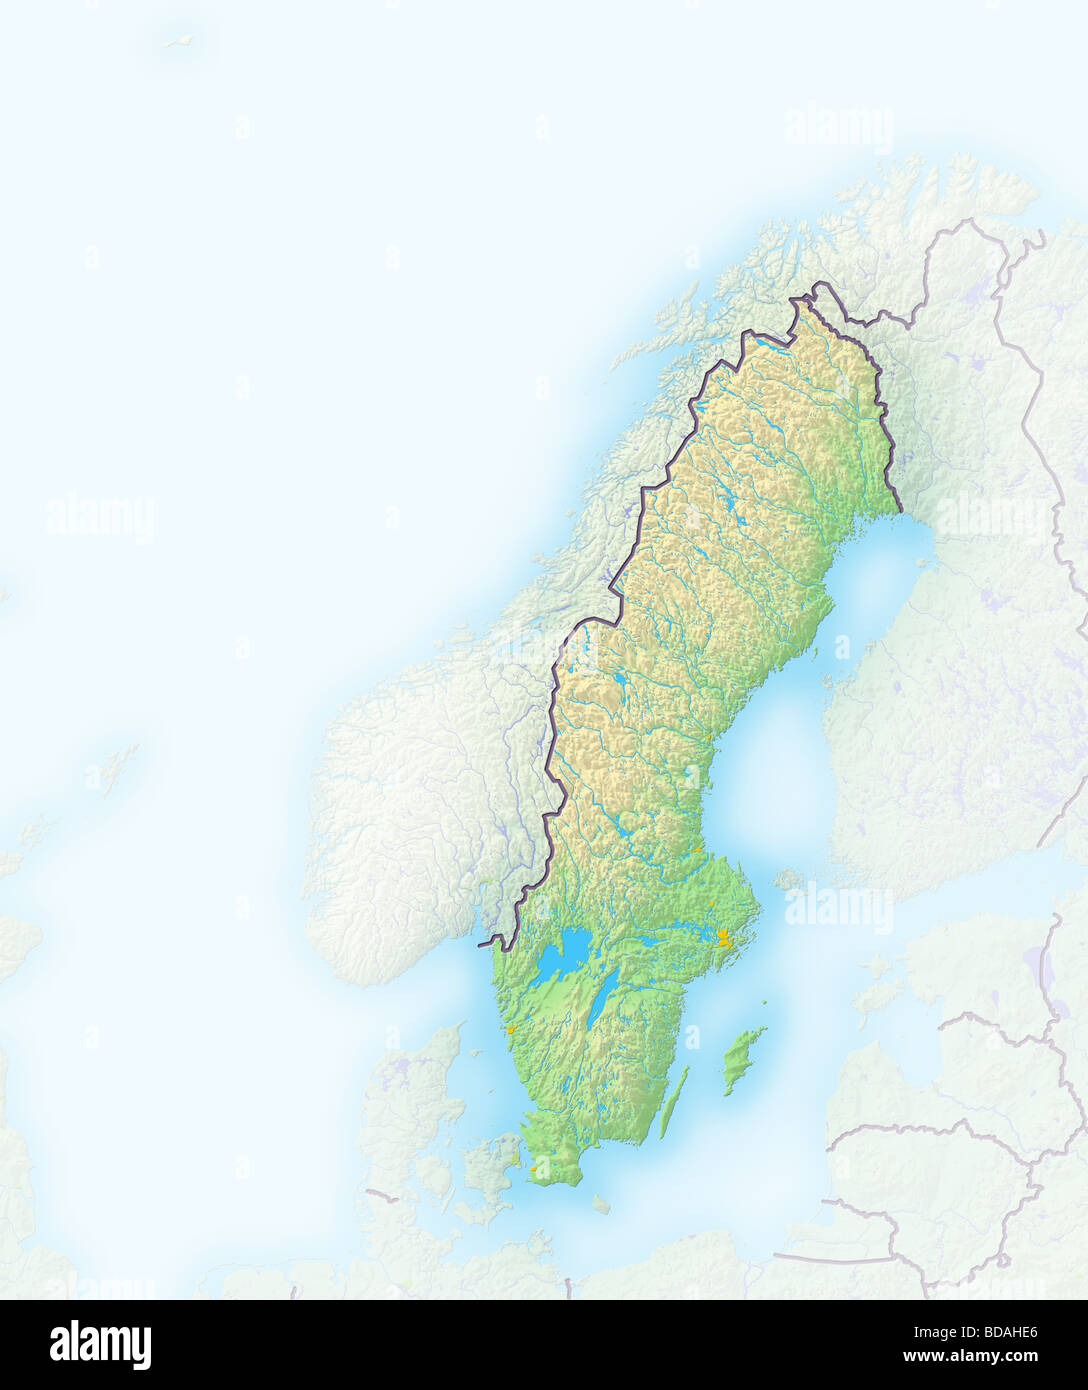 Svezia carta geografica immagini e fotografie stock ad alta risoluzione -  Alamy